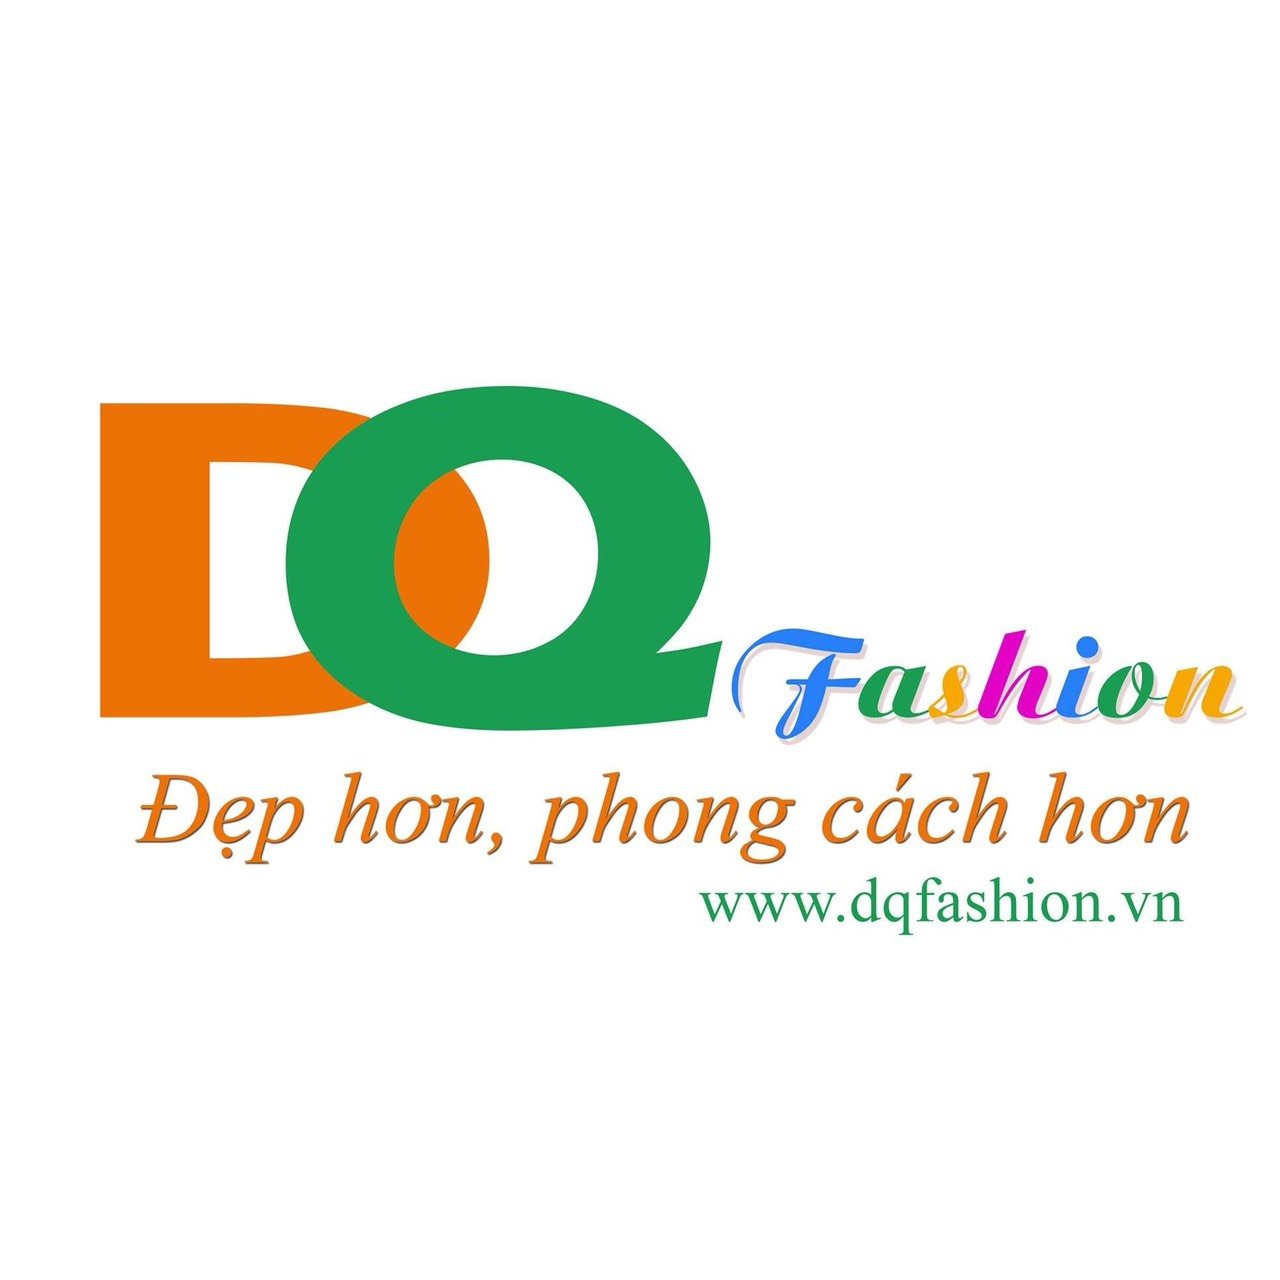 DQ Fashion